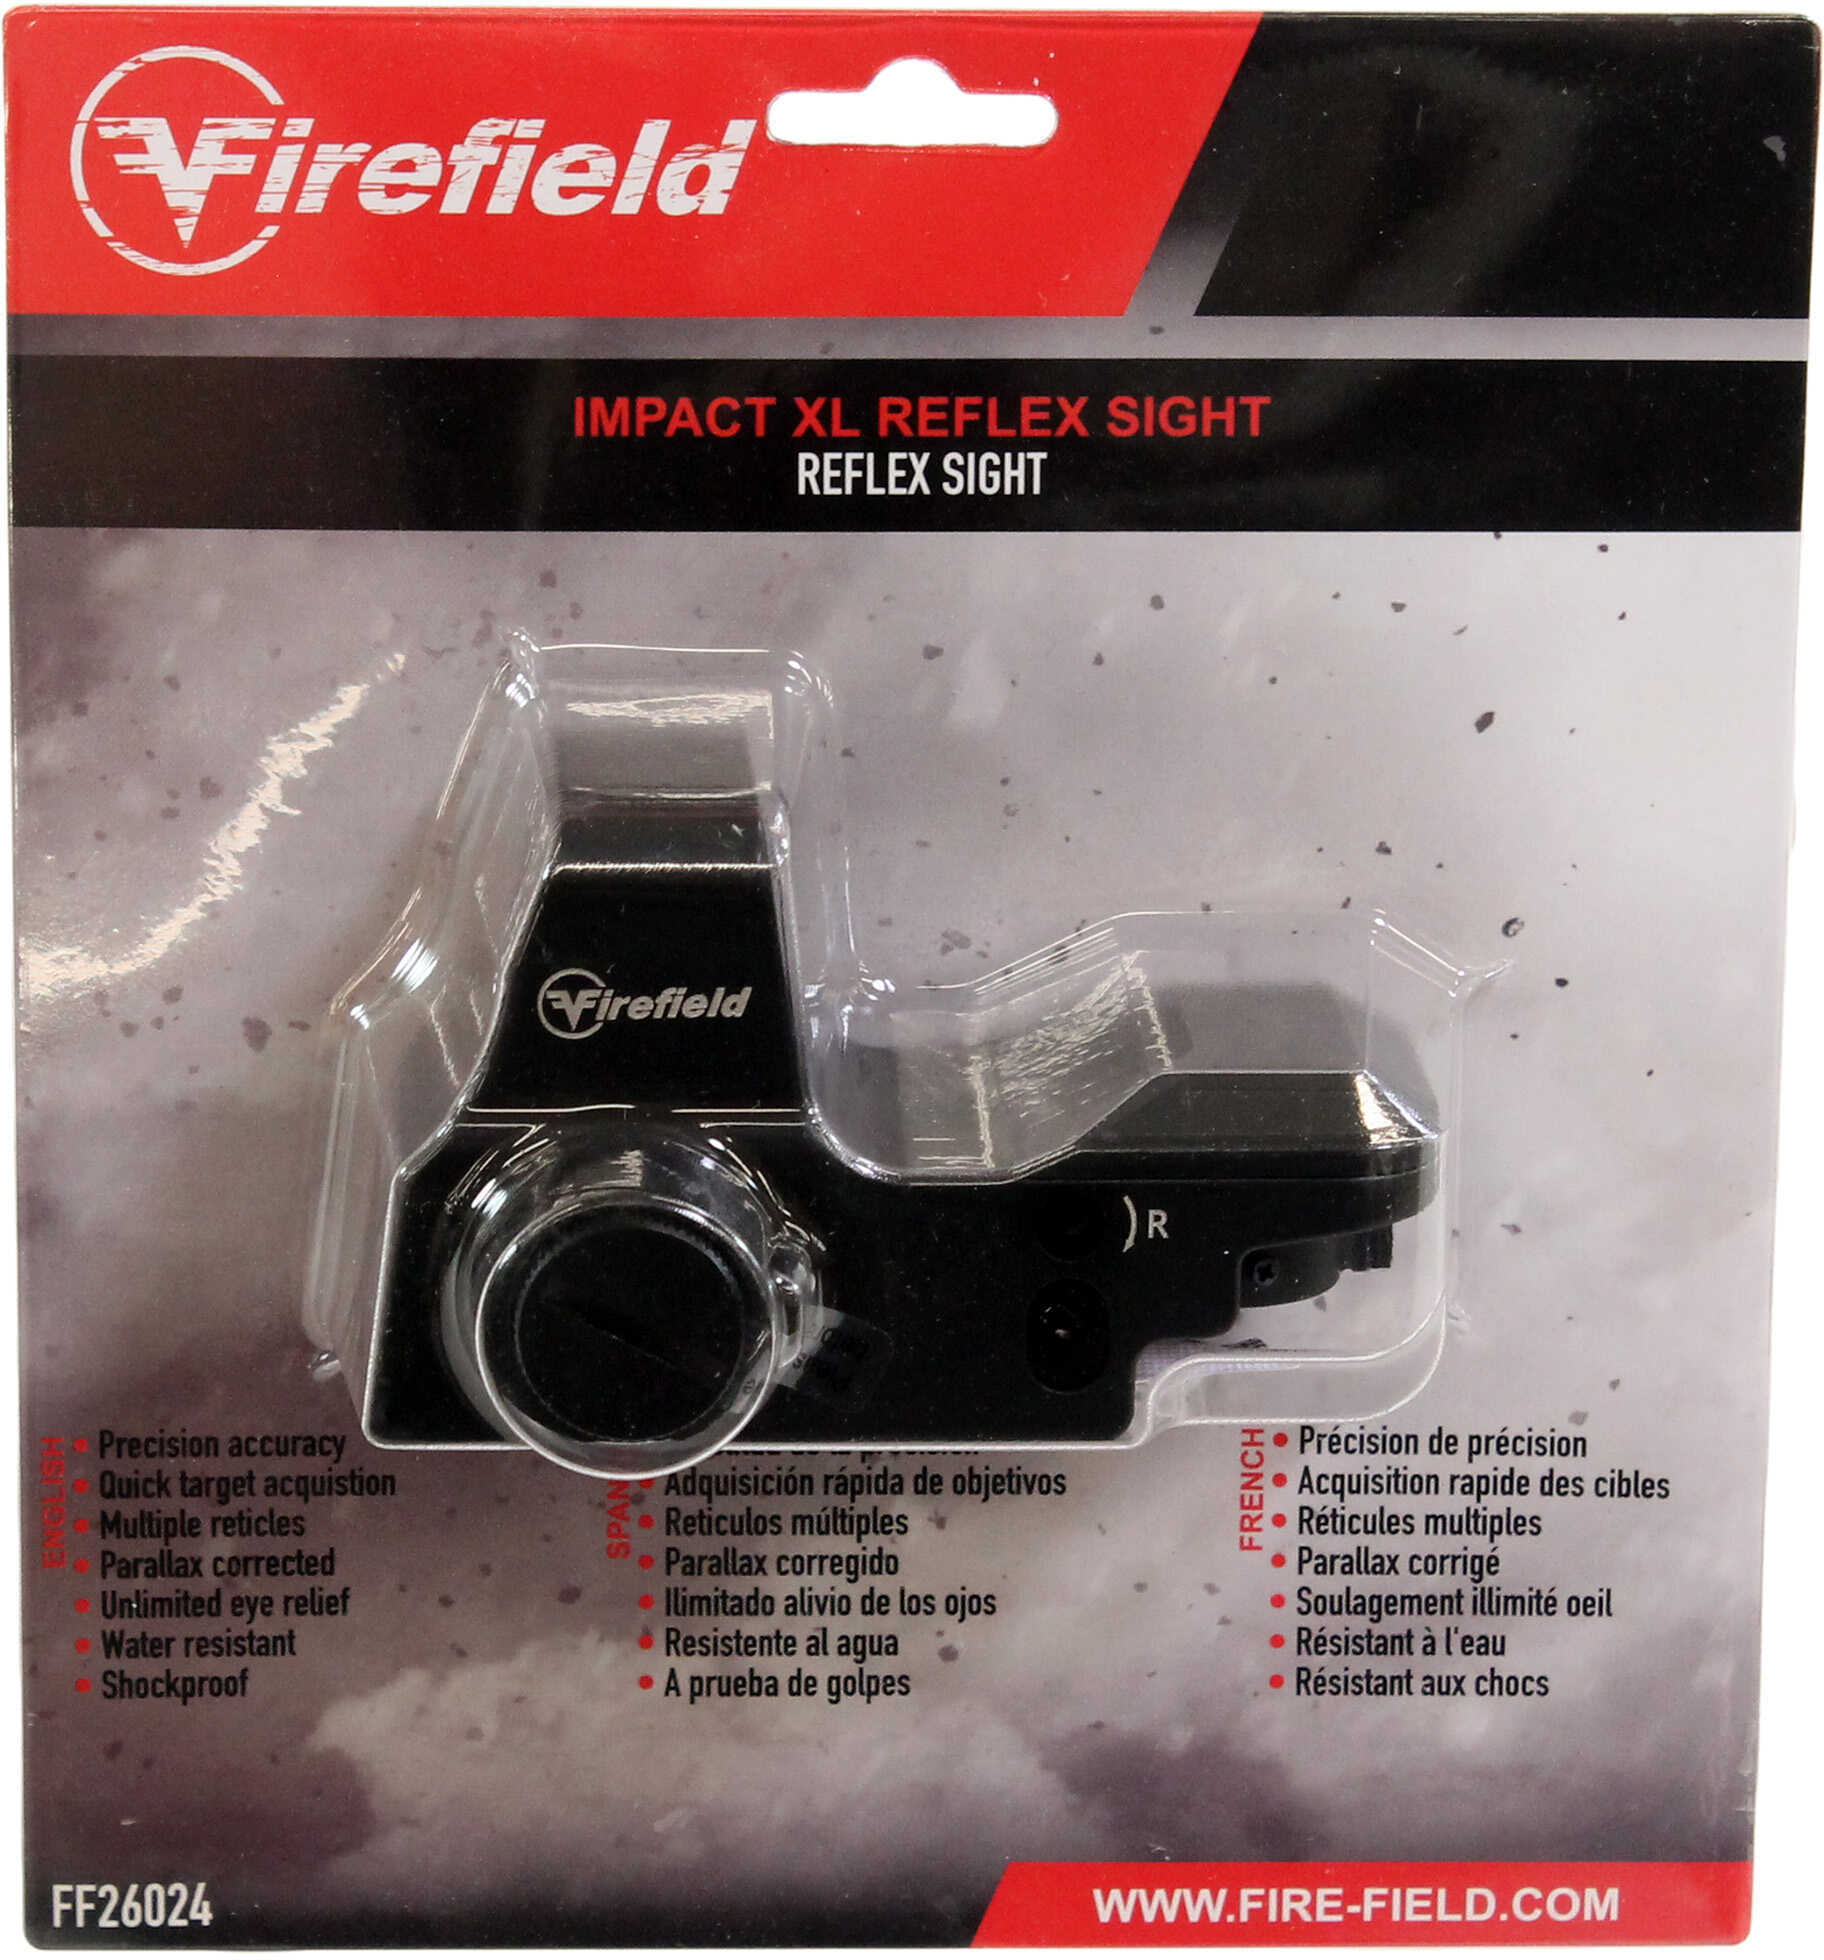 Impact XL Reflex Sight Md: FF26024 Firefield